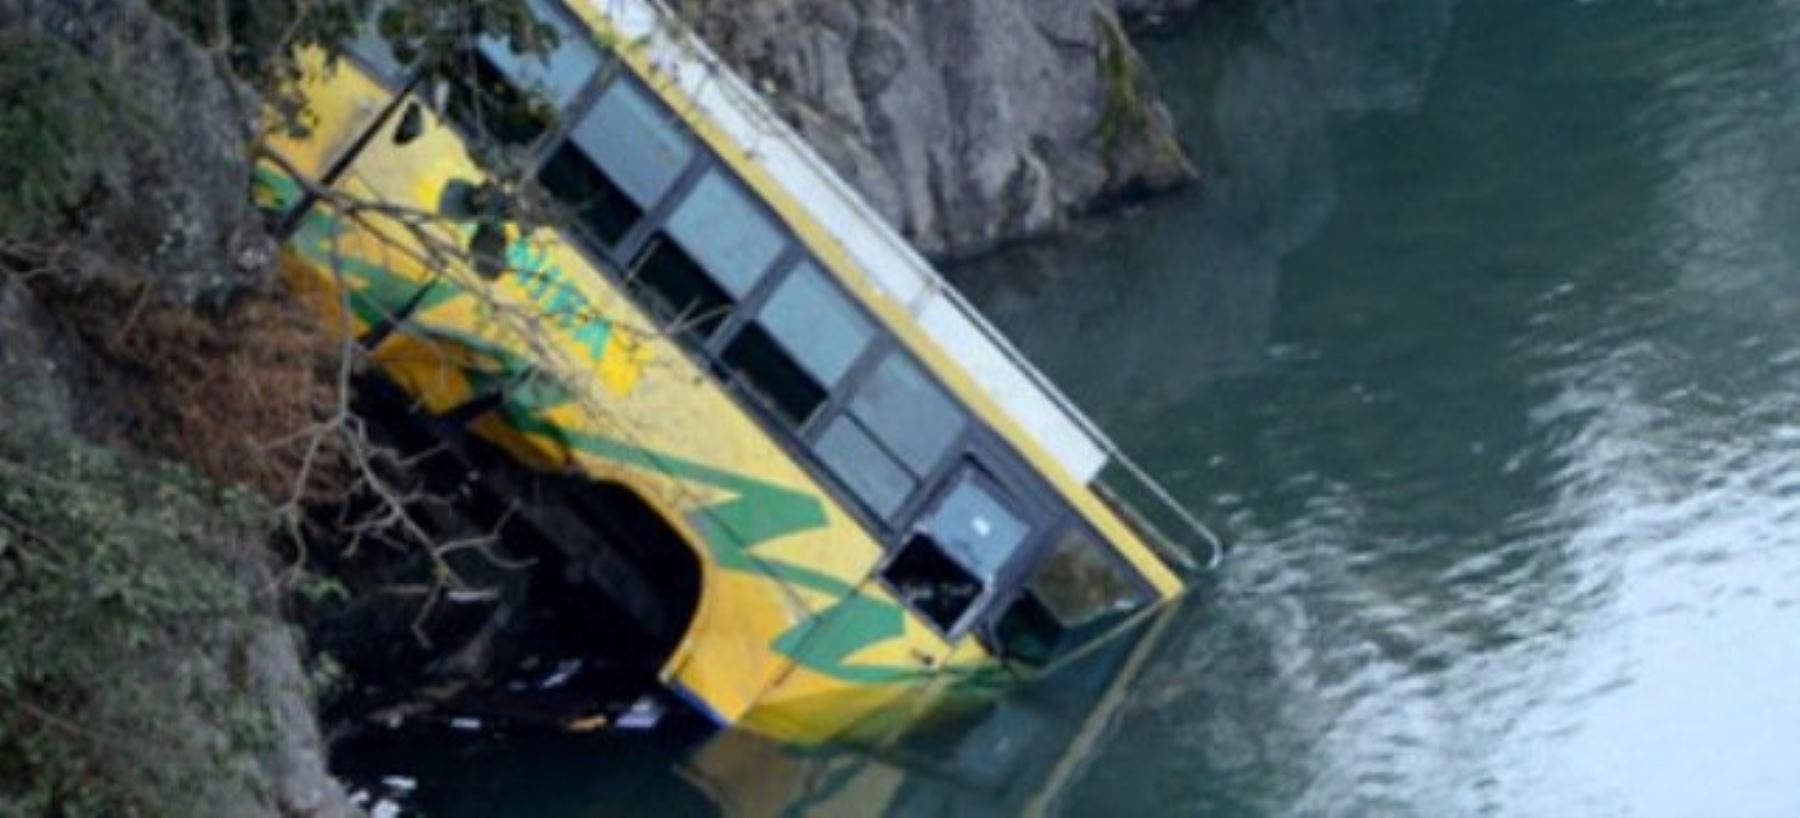 Al menos 16 muertos y 28 heridos al caer un autobús a un río en la India